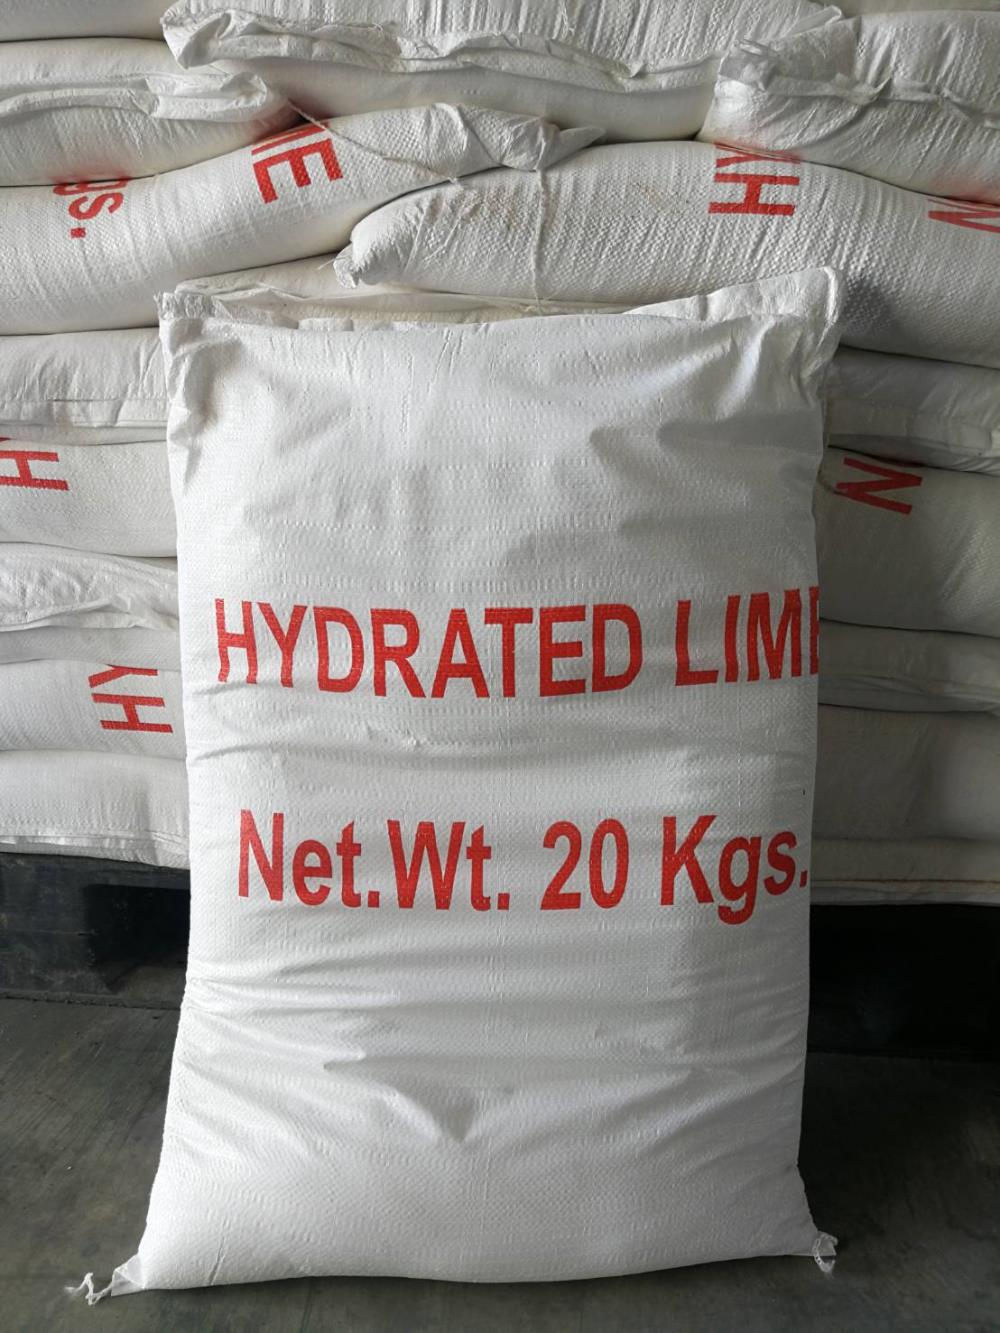 ปูนขาว, Hydrated Lime, Calcium Hydroxide,ปูนขาว, Hydrated Lime, Calcium Hydroxide,,Chemicals/Calcium/Calcium Hydroxide